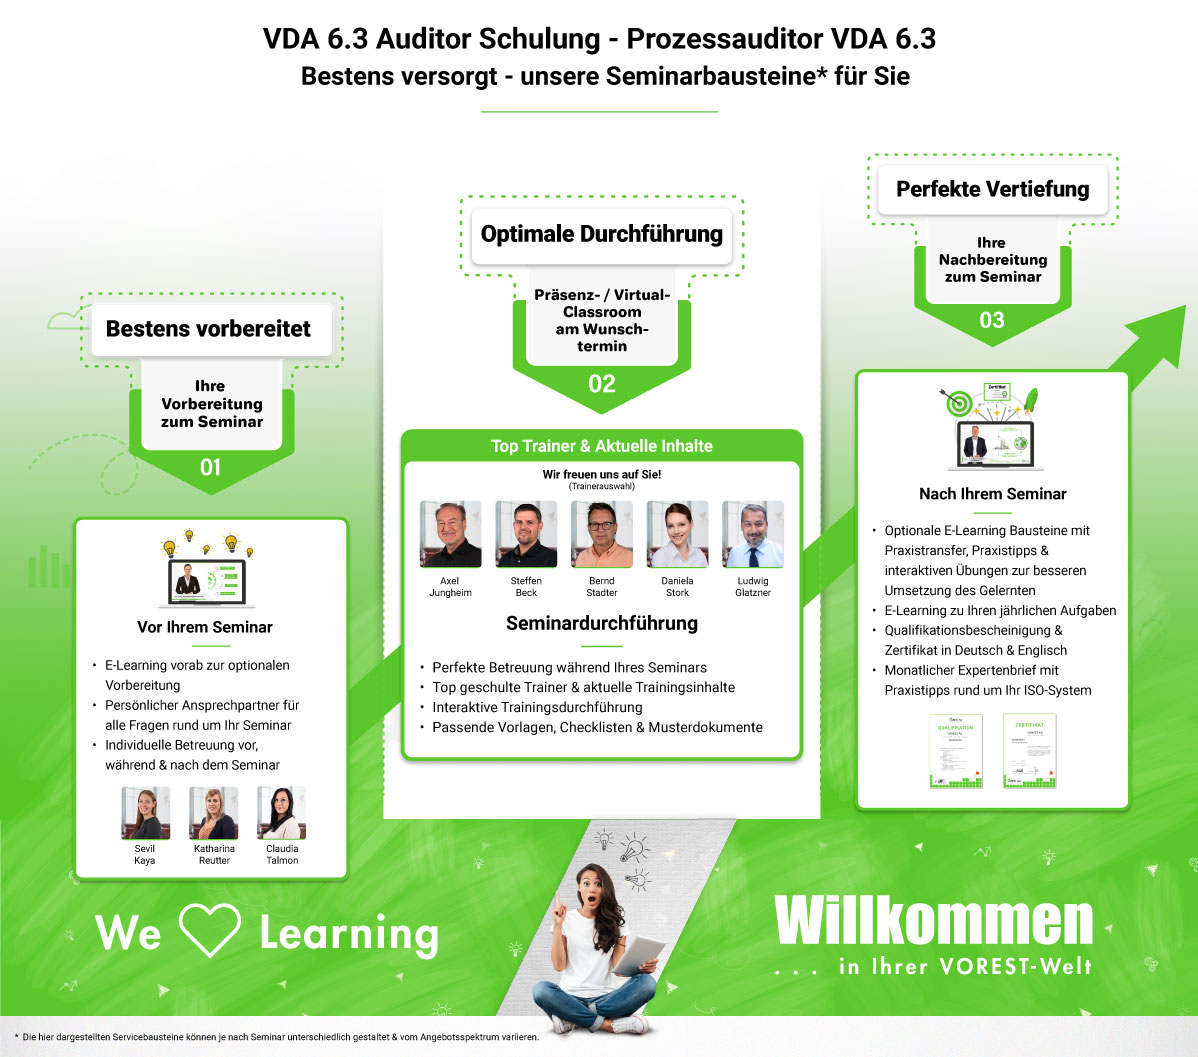 VDA 6.3 Auditor Schulung - Prozessauditor VDA 6.3